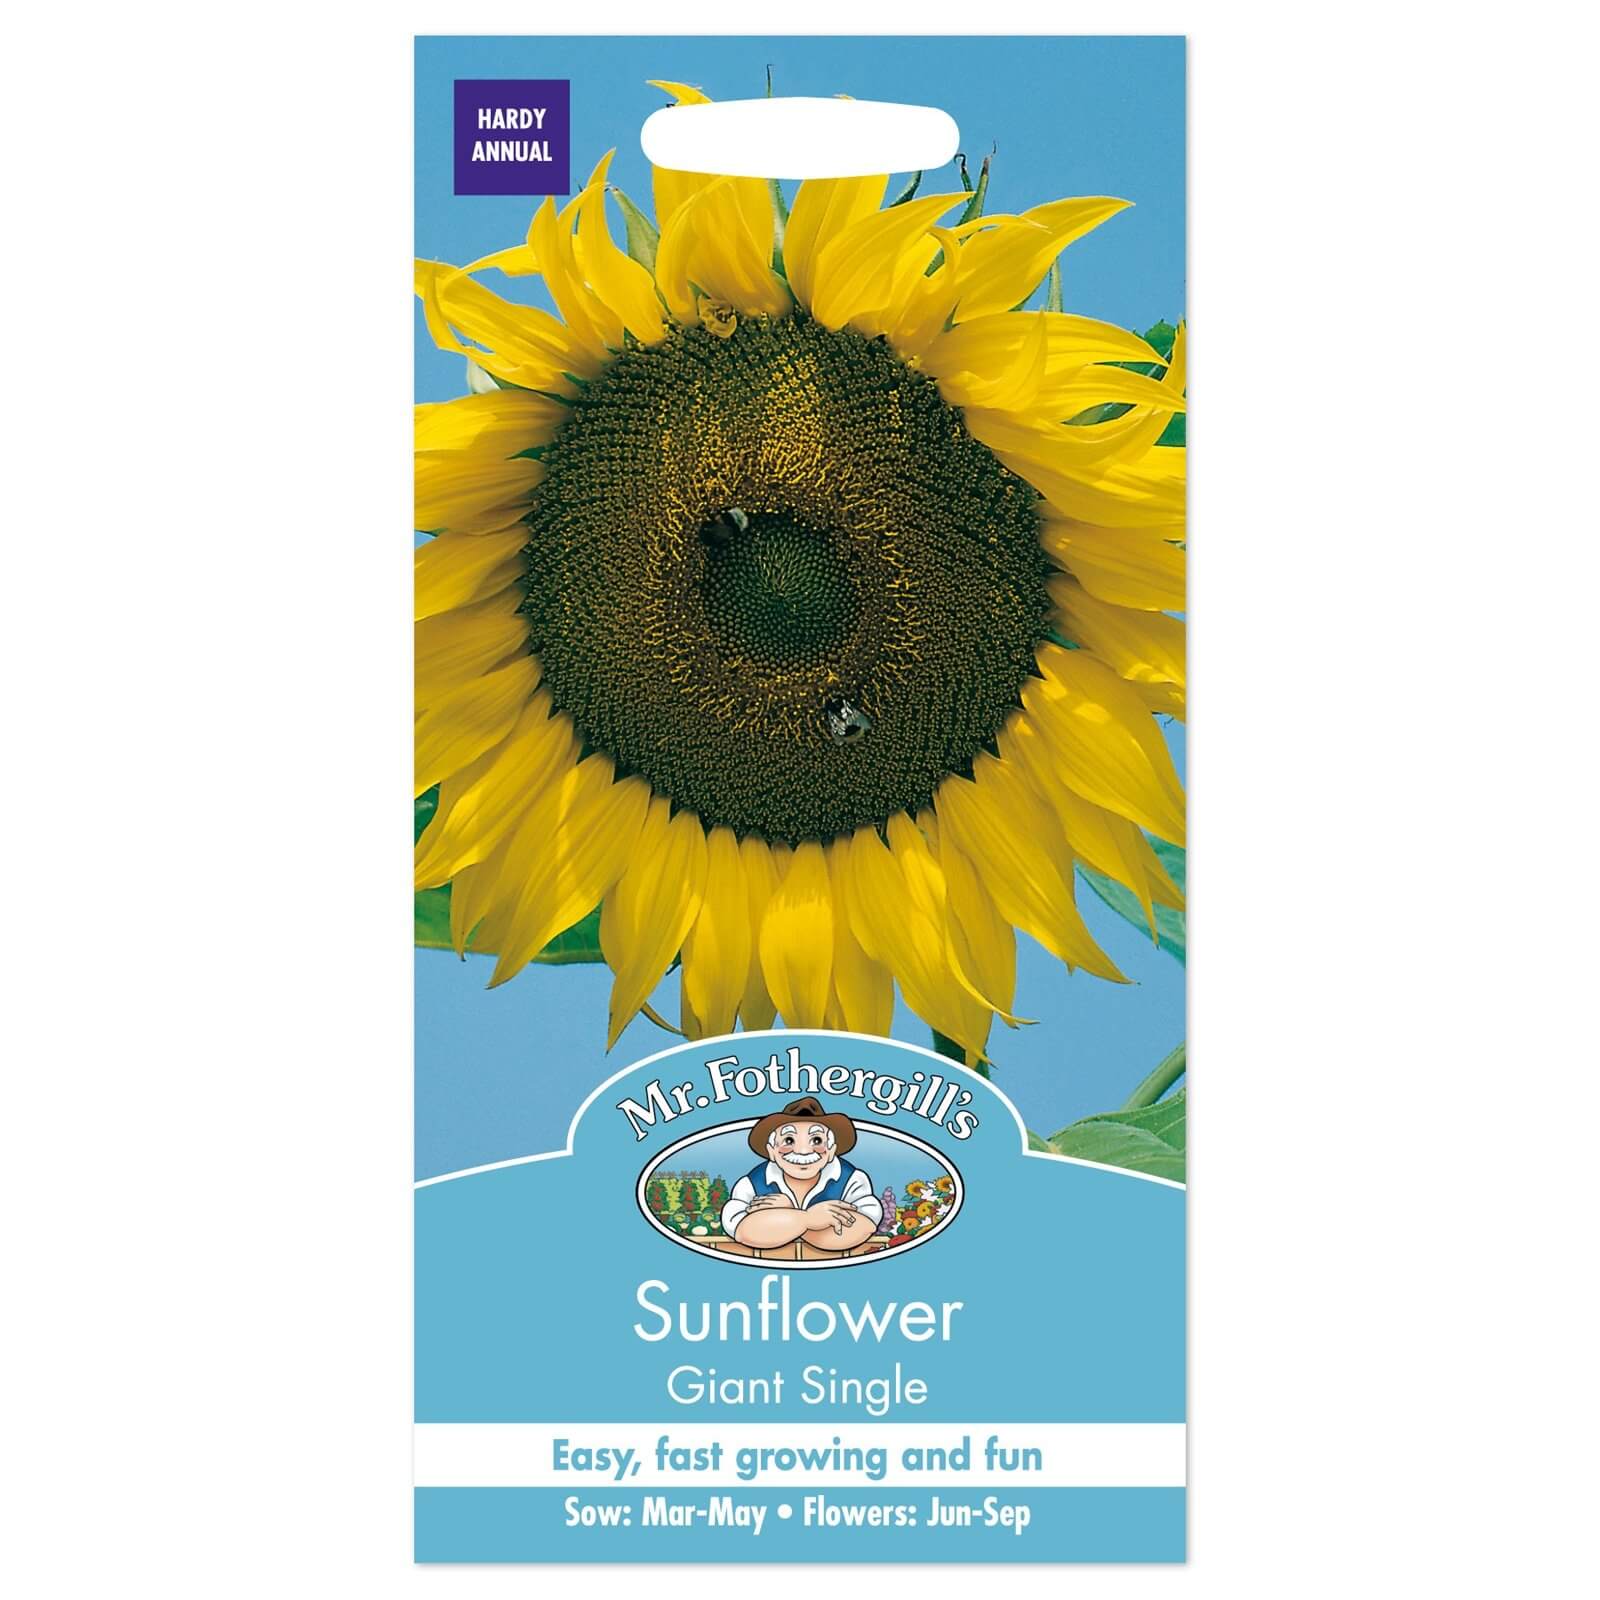 Mr. Fothergill's Sunflower Giant Single Seeds